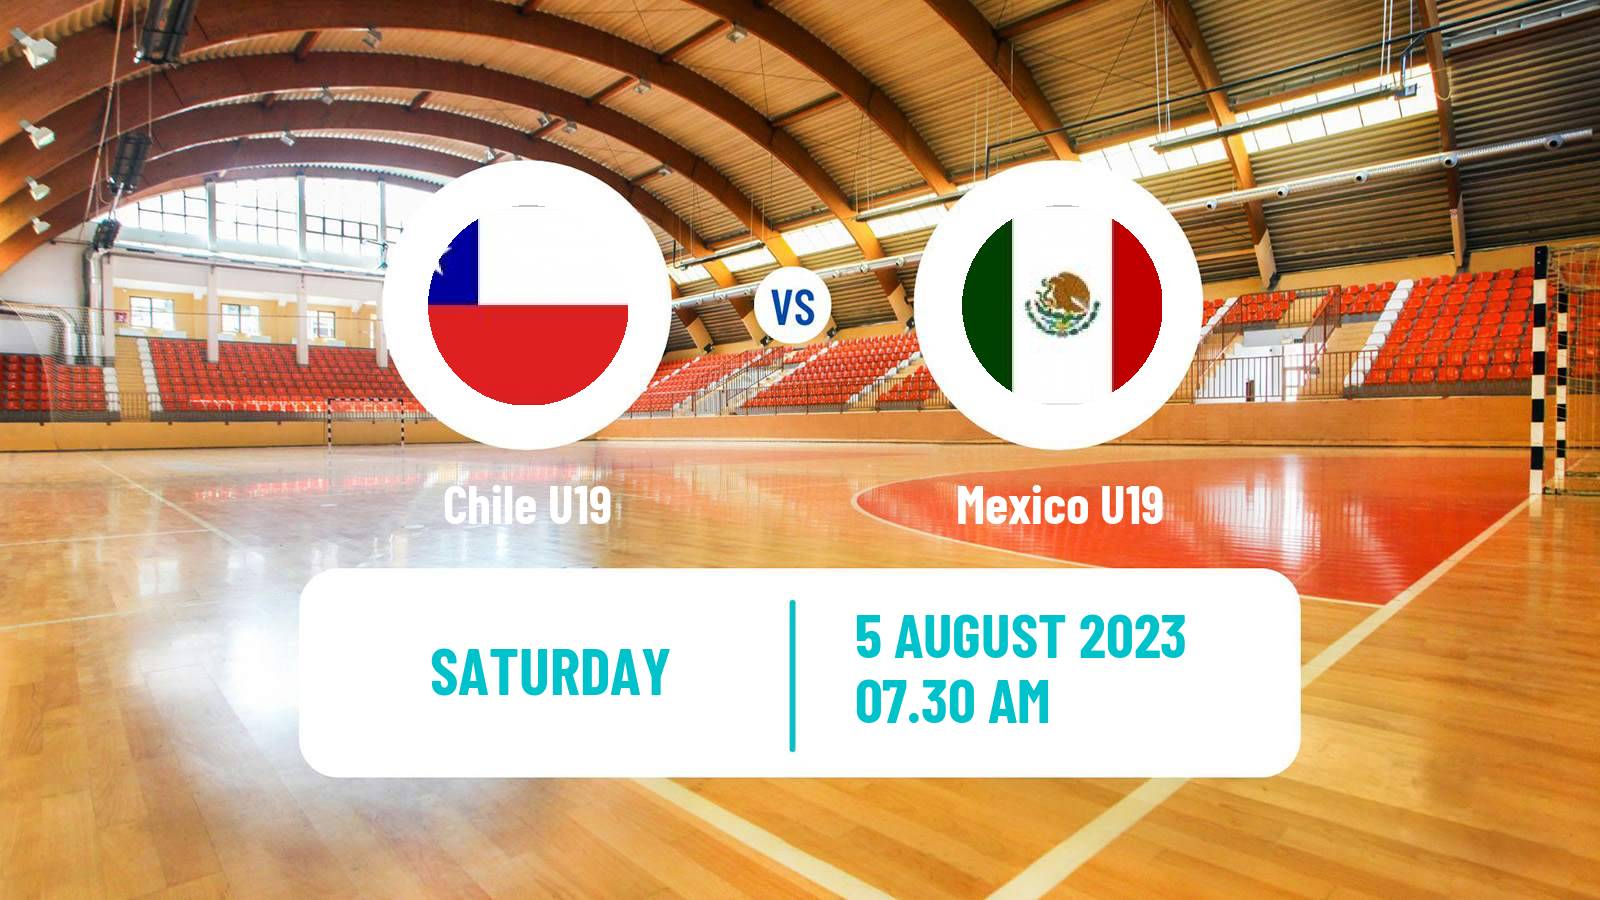 Handball World Championship U19 Handball Chile U19 - Mexico U19